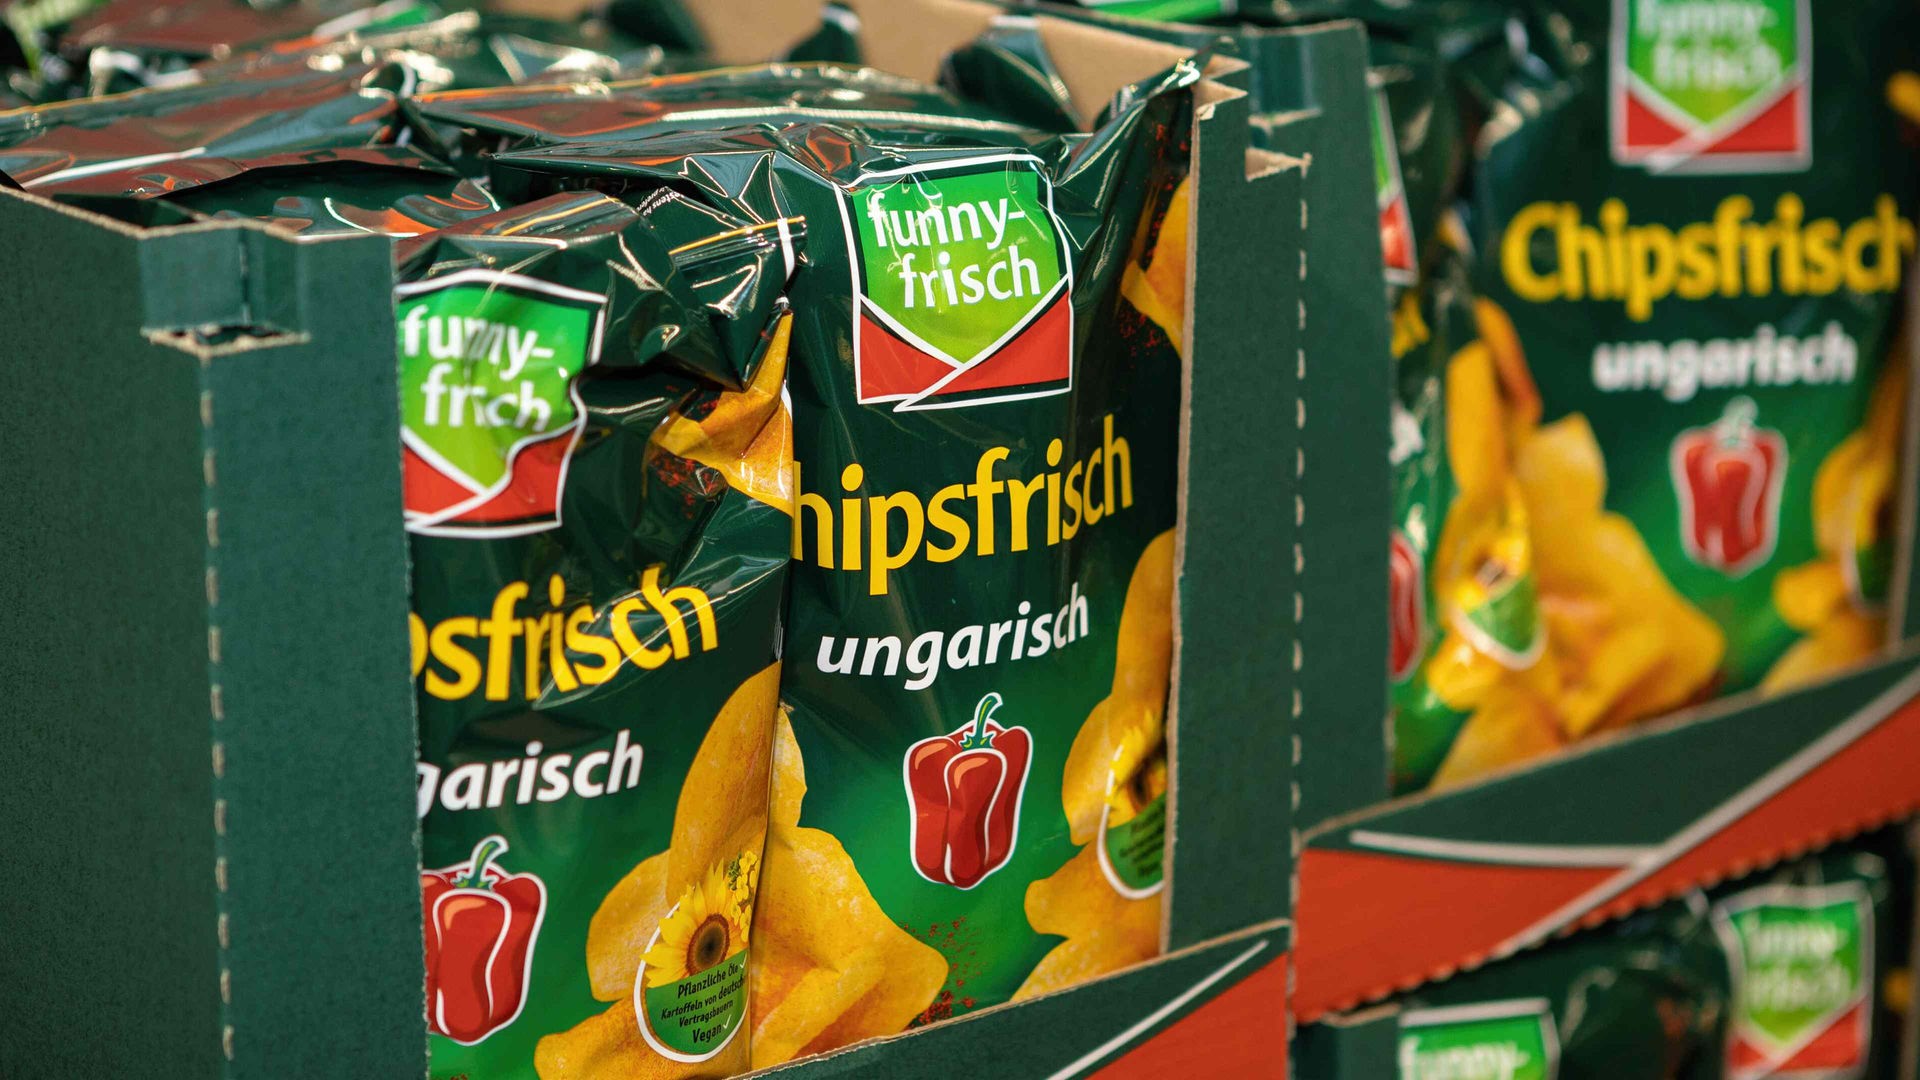 Chips-Rückruf bei Funny-Frisch - Verbraucher in - Nachrichten WDR betroffen - NRW